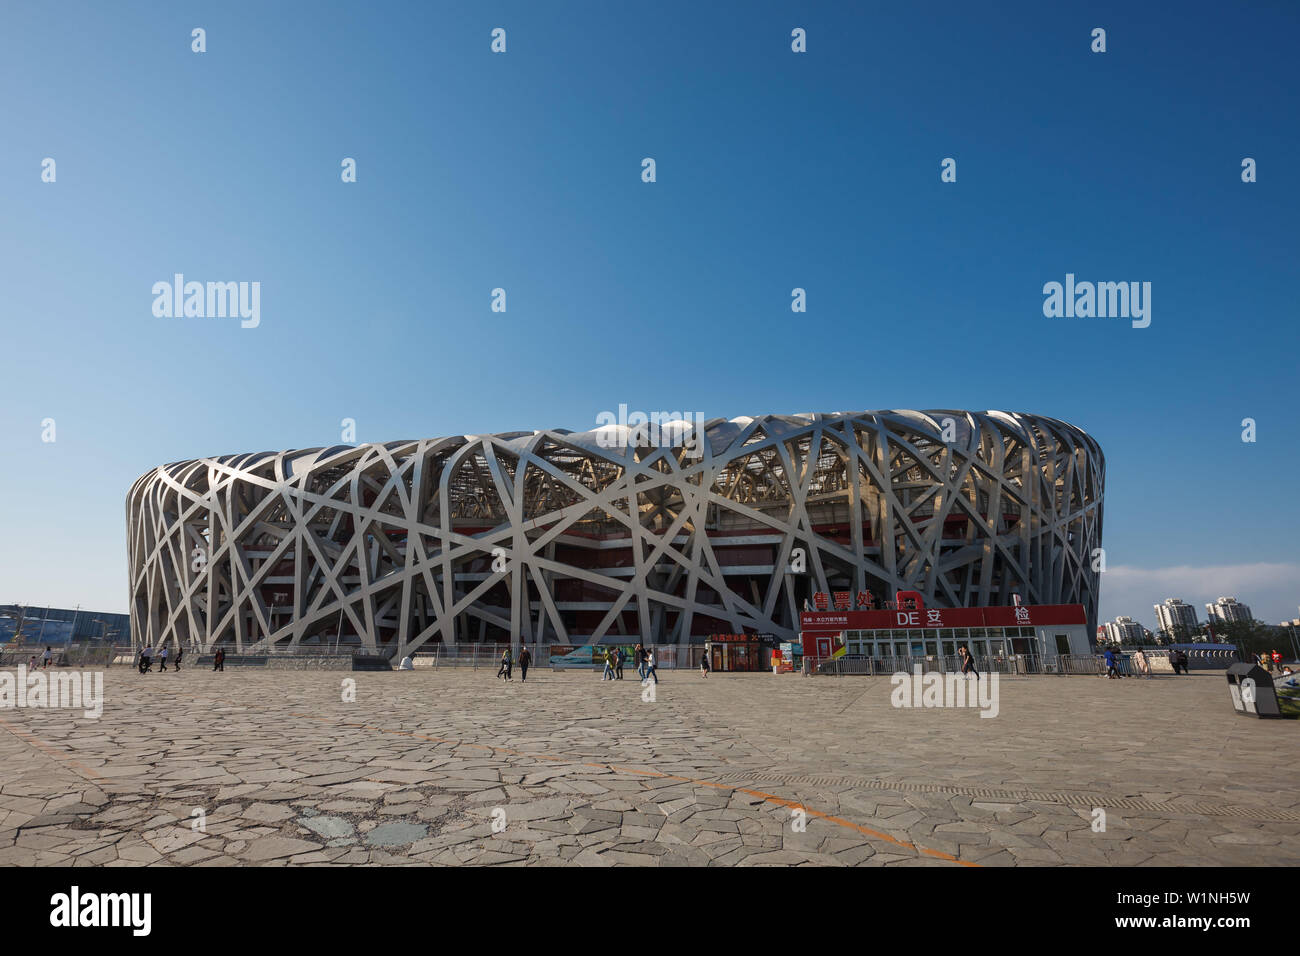 Nido de Pájaro stadion, el Parque Olímpico de Beijing, China Foto de stock